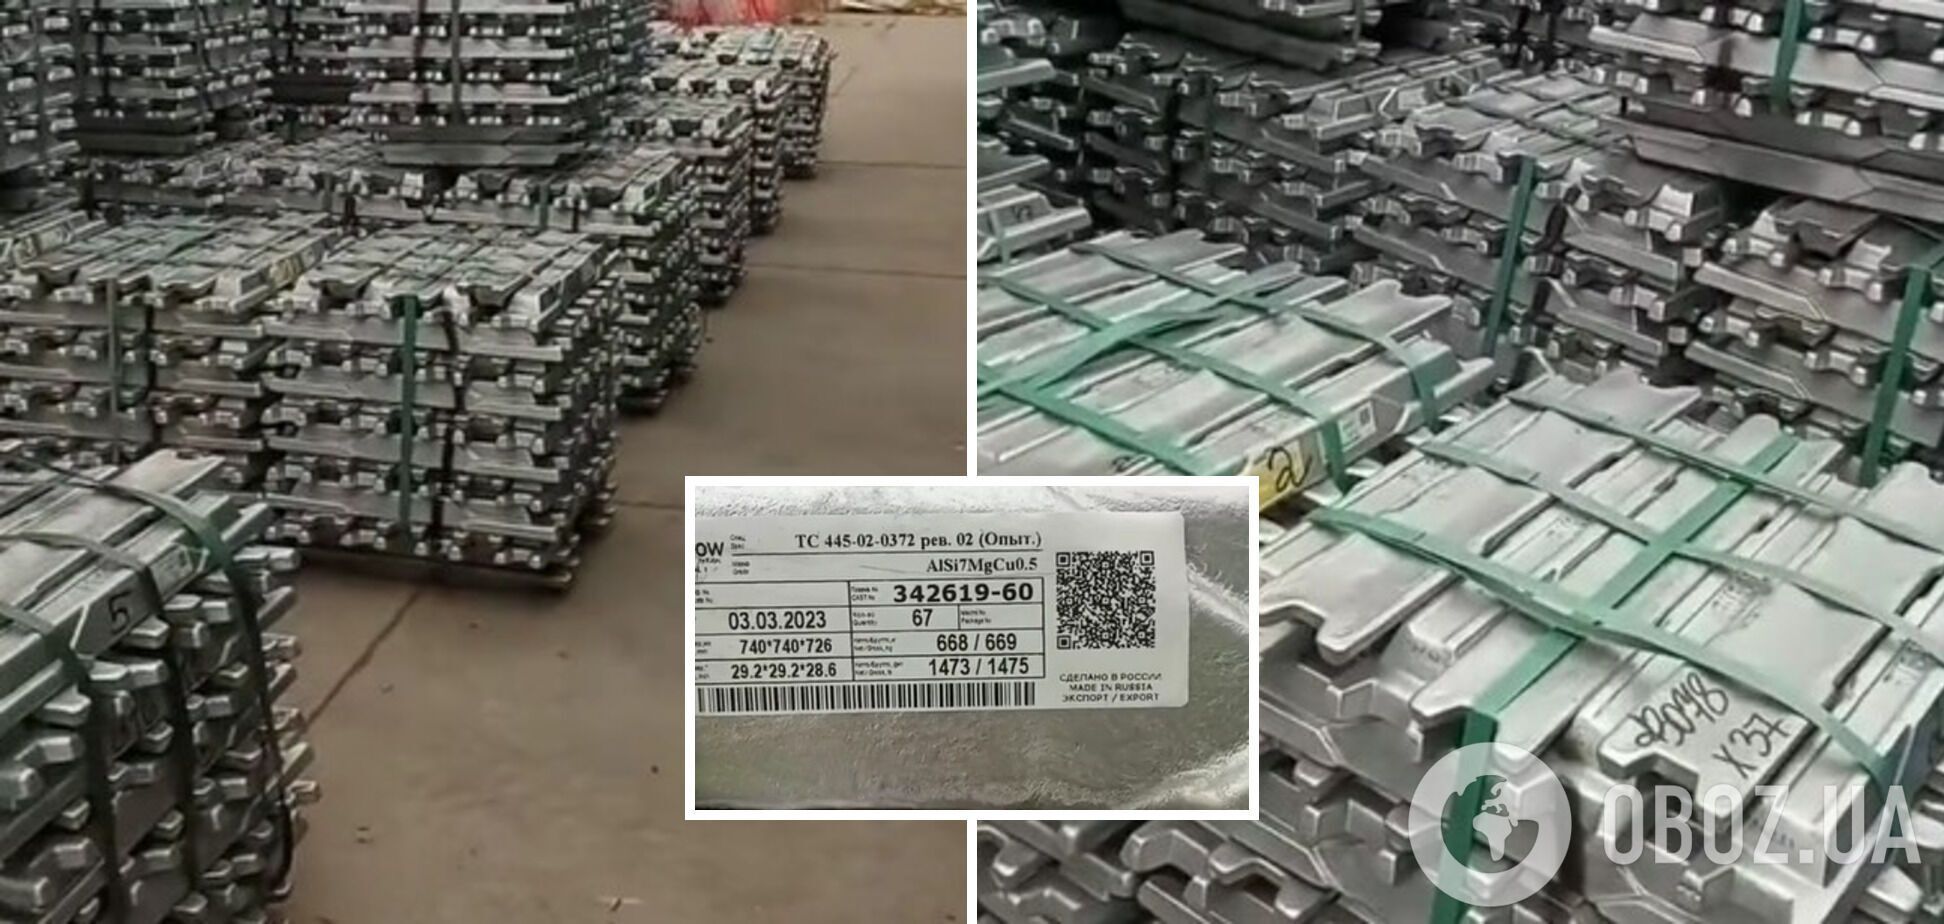 В Польше на складах был обнаружен алюминий из России, который в ЕС стремятся заблокировать санкциями. Видео